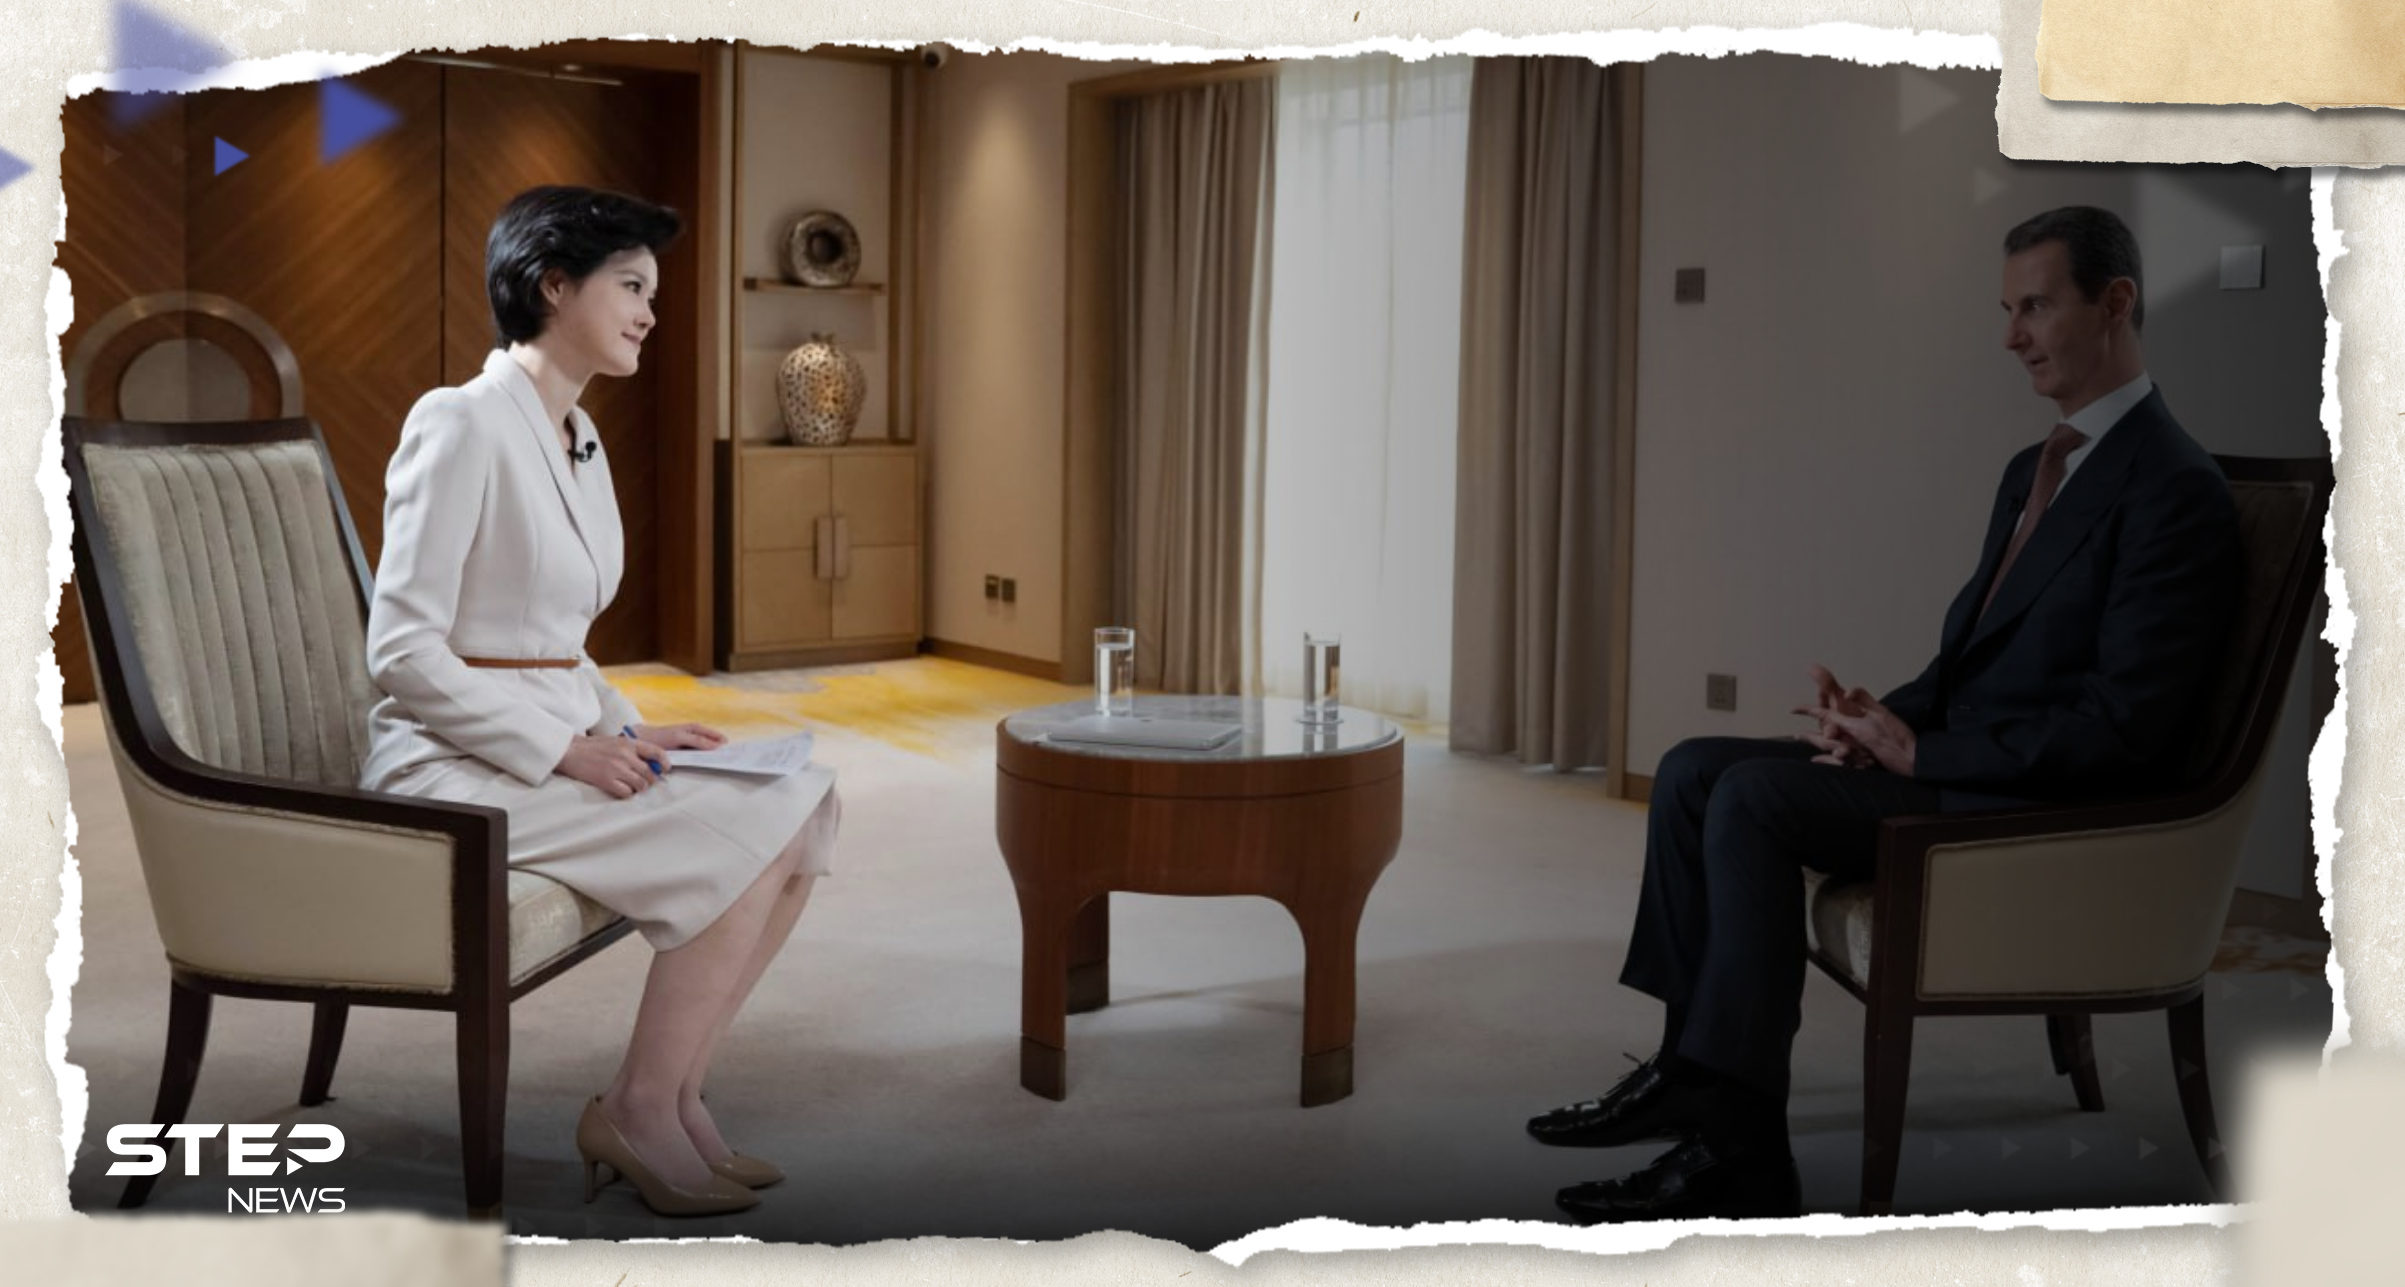 بالفيديو|| بشار الأسد لقناة صينية: "الحرب مستمرة".. ويقدم هدية "غير متوقعة" للصحفية